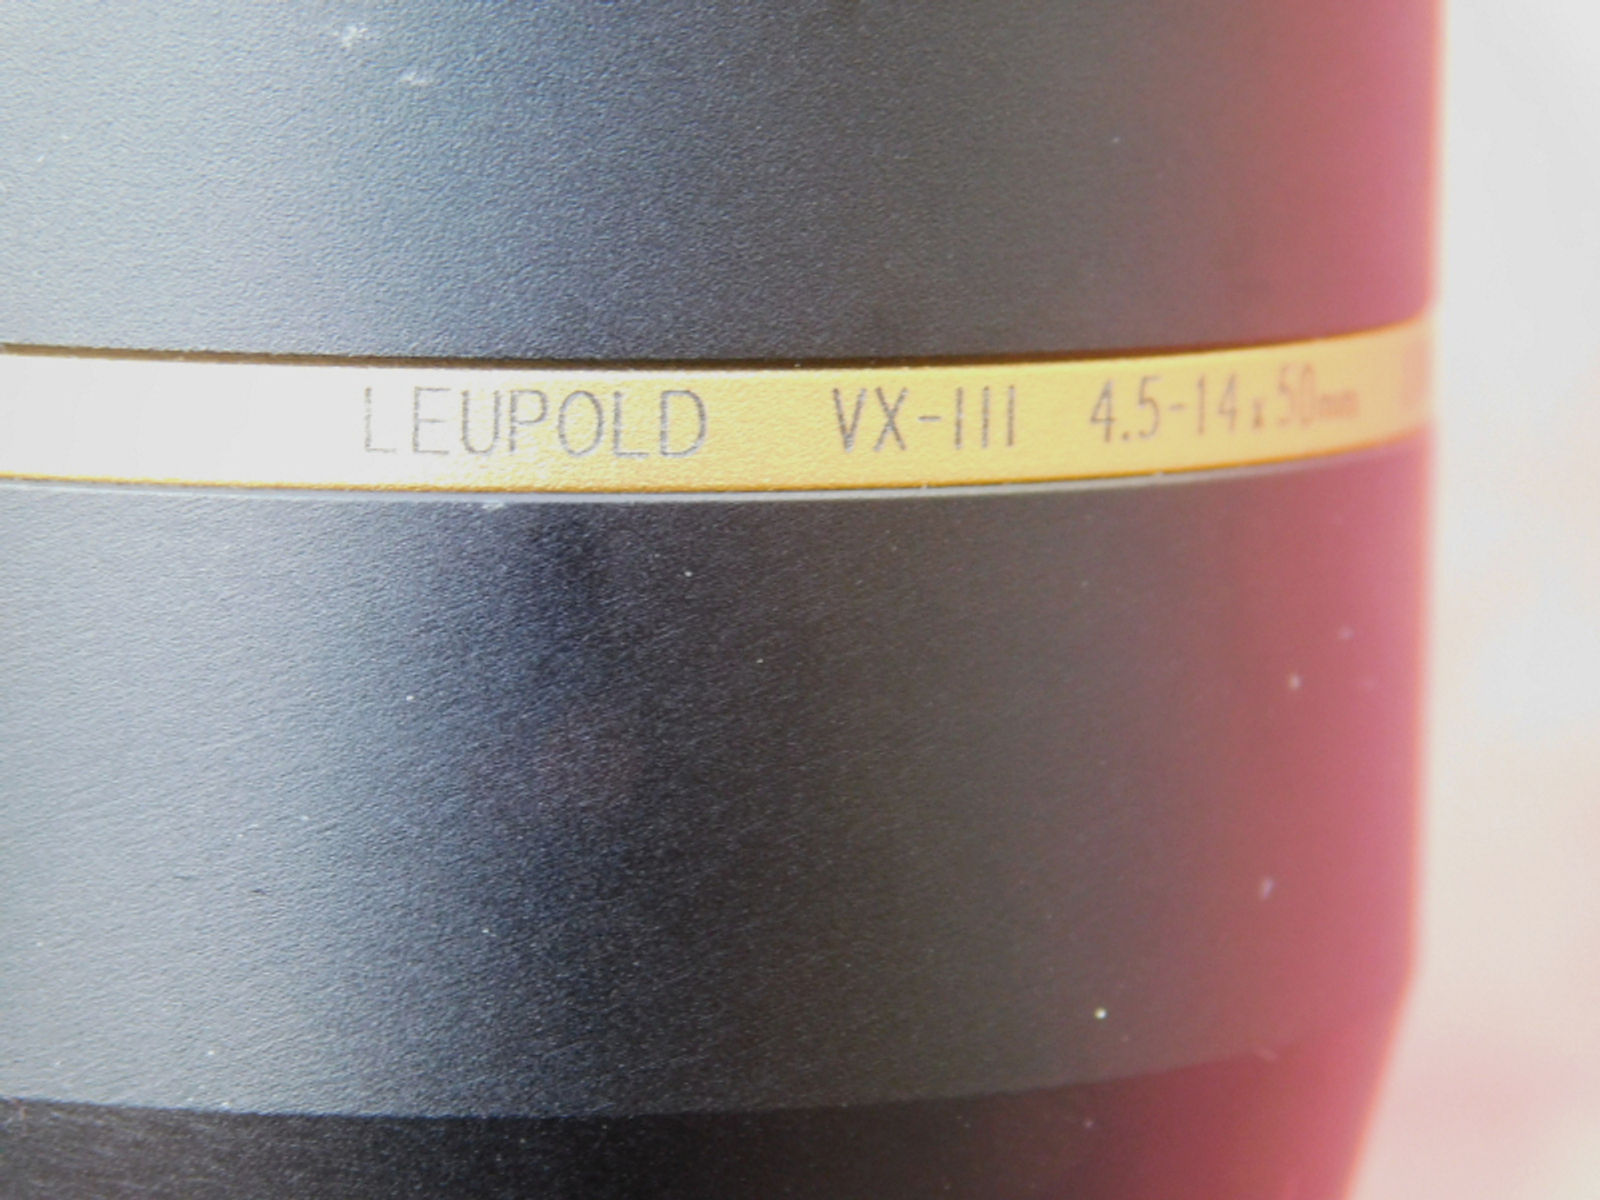 Leupold Vari x III 4,5-14x50 Long Range mit Leuchtpunkt und Parallaxeausgleich